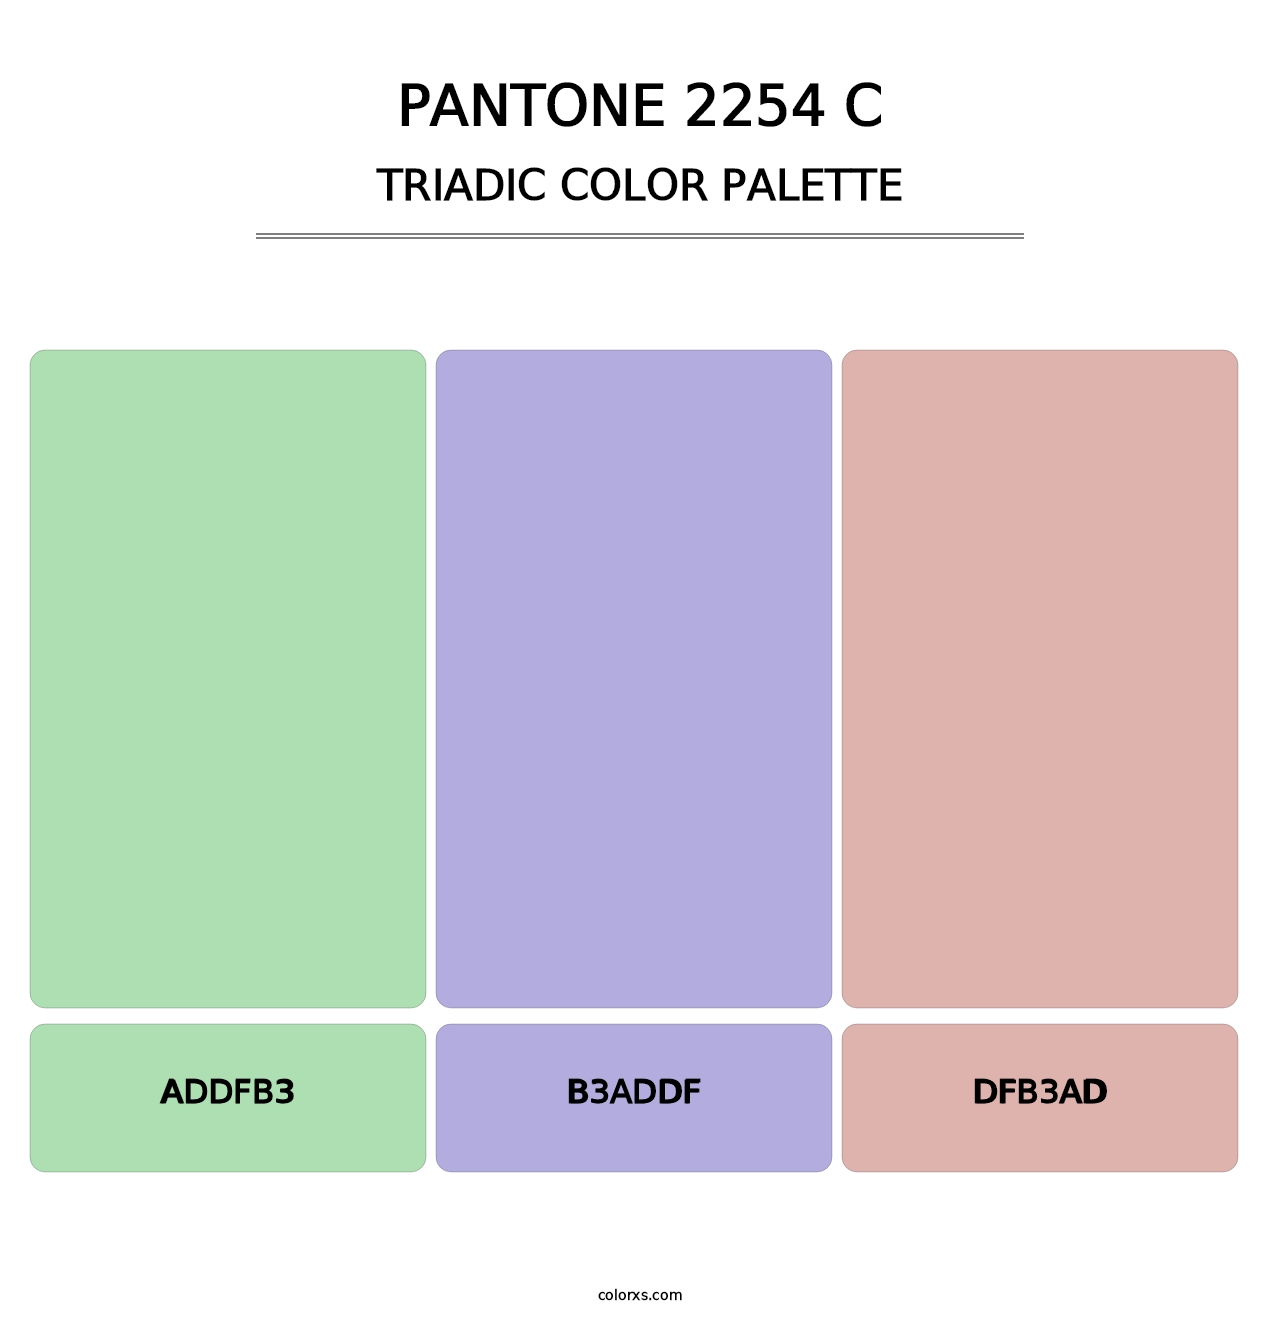 PANTONE 2254 C - Triadic Color Palette